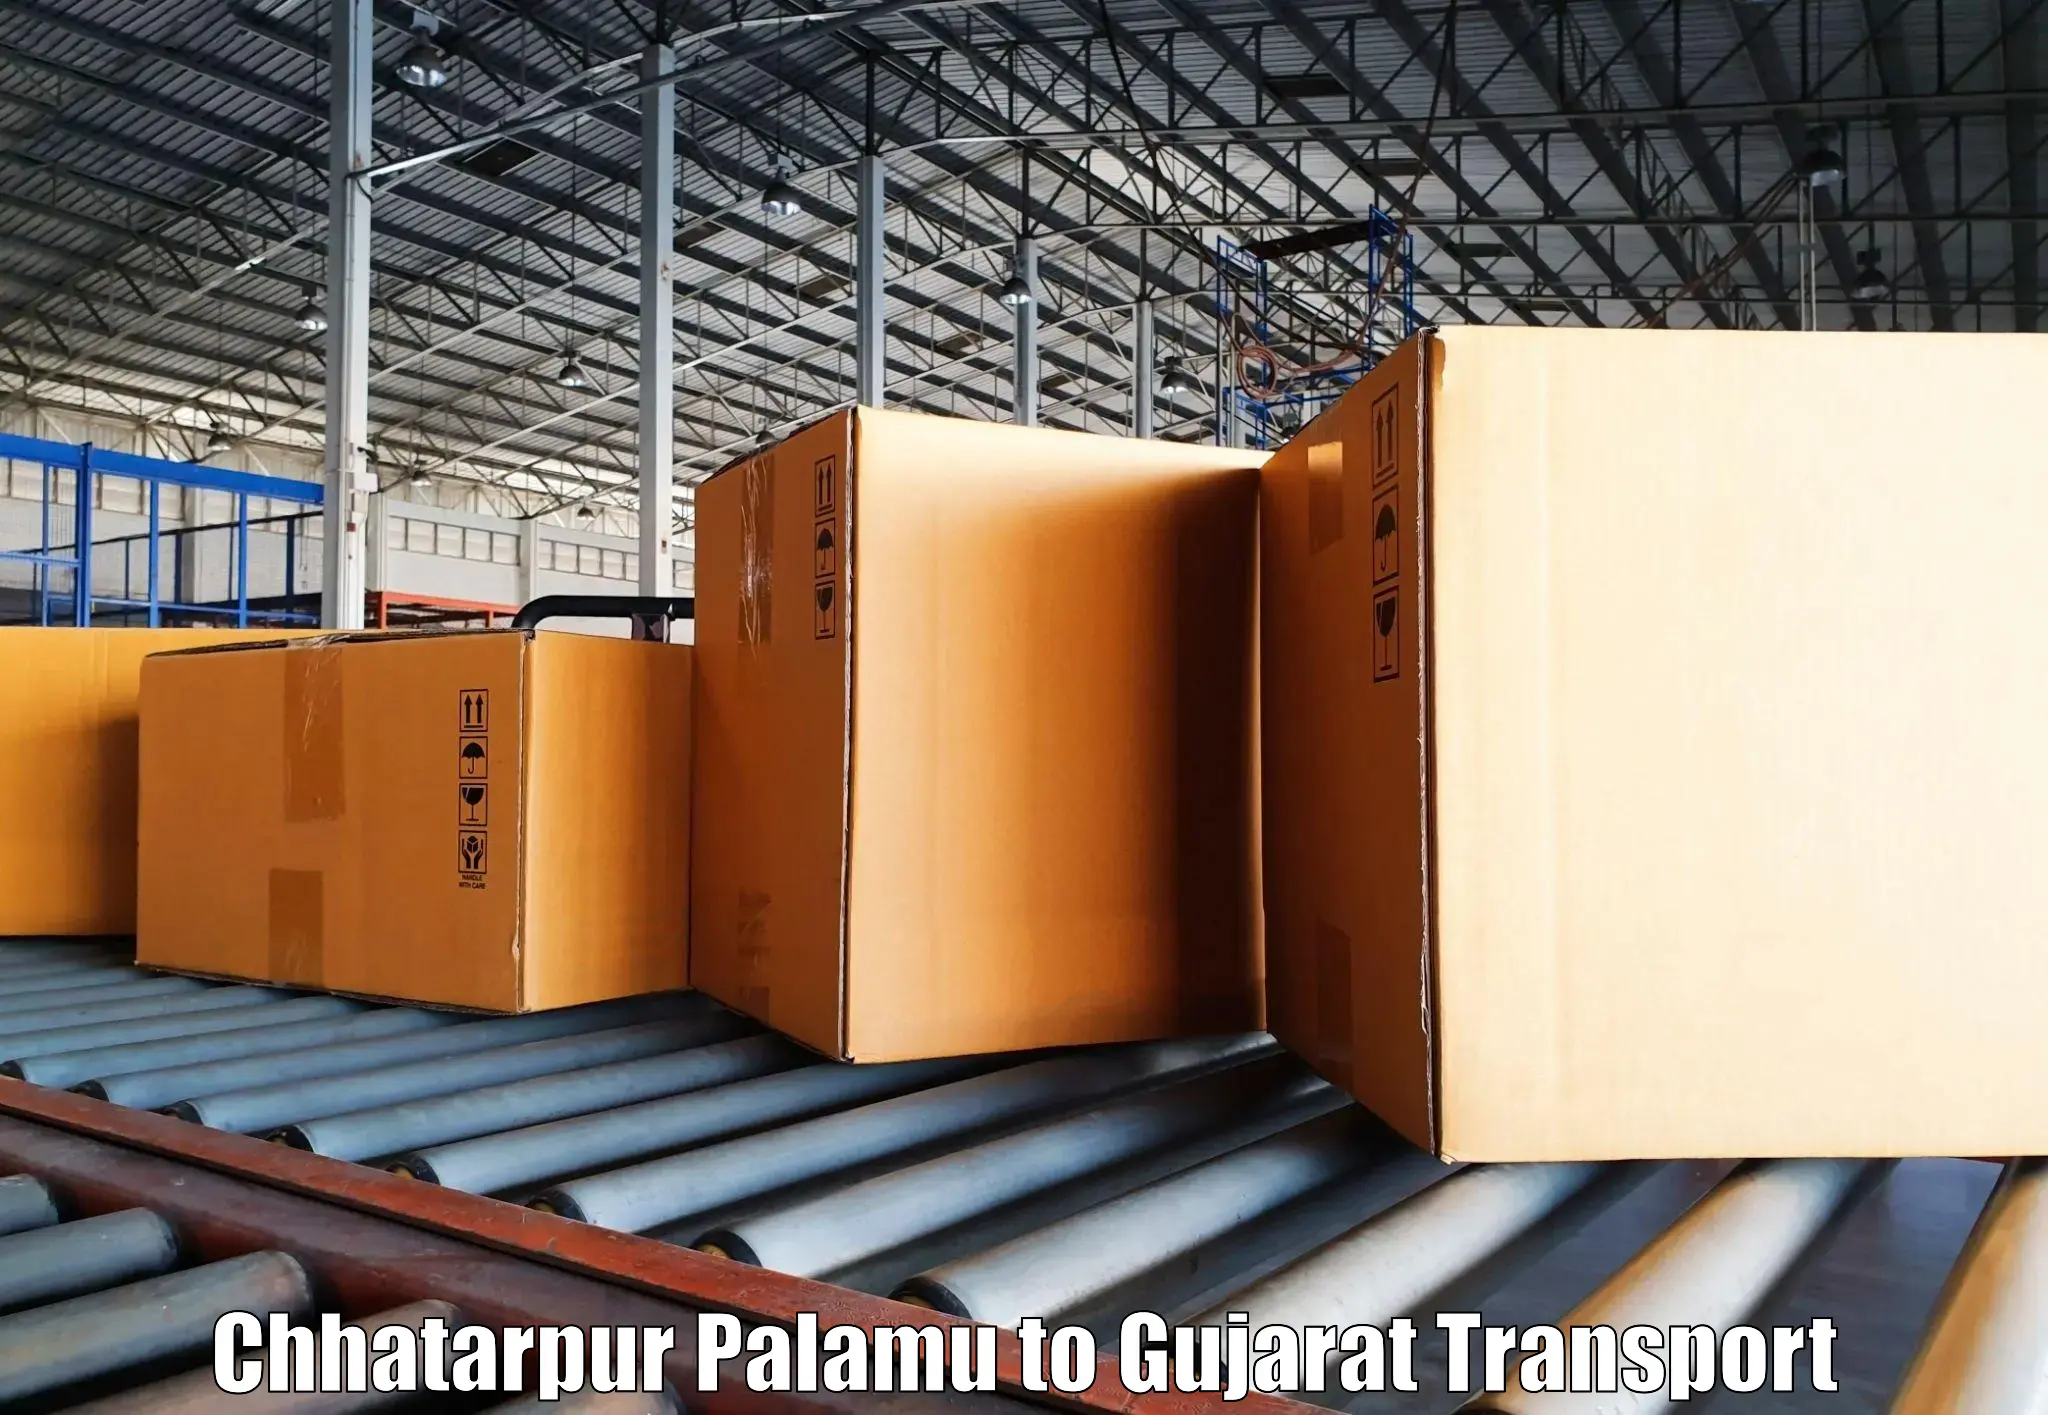 Two wheeler transport services Chhatarpur Palamu to IIT Gandhi Nagar